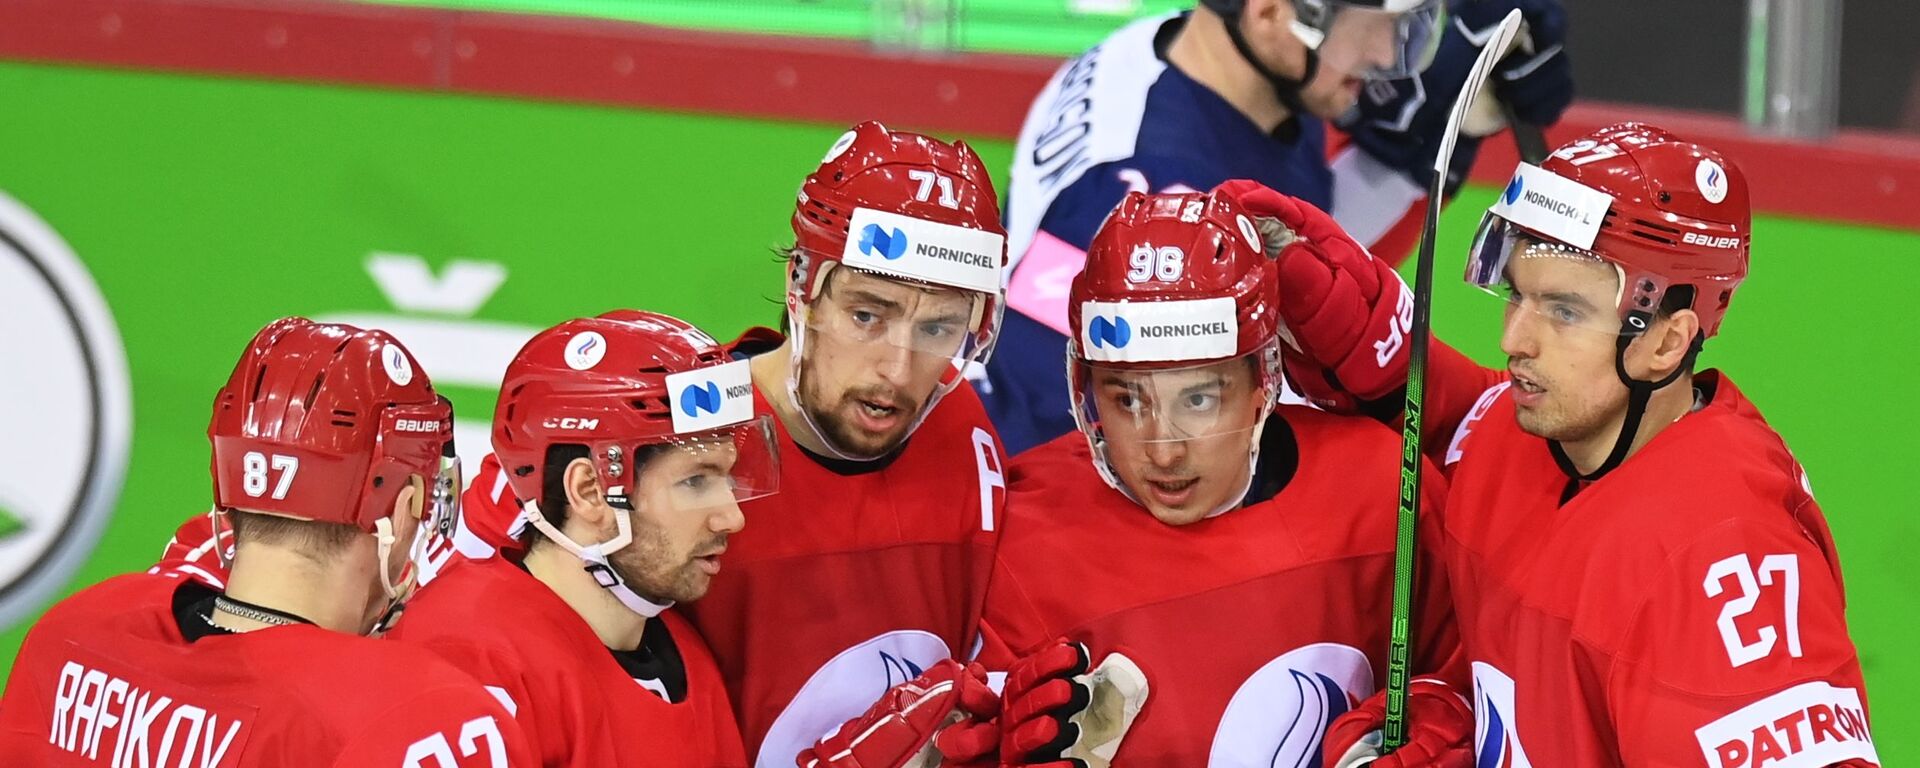 Игроки сборной России радуются забитой шайбе в матче против сборной Великобритании на групповом этапе чемпионата мира по хоккею 2021 - Sputnik Латвия, 1920, 22.05.2021